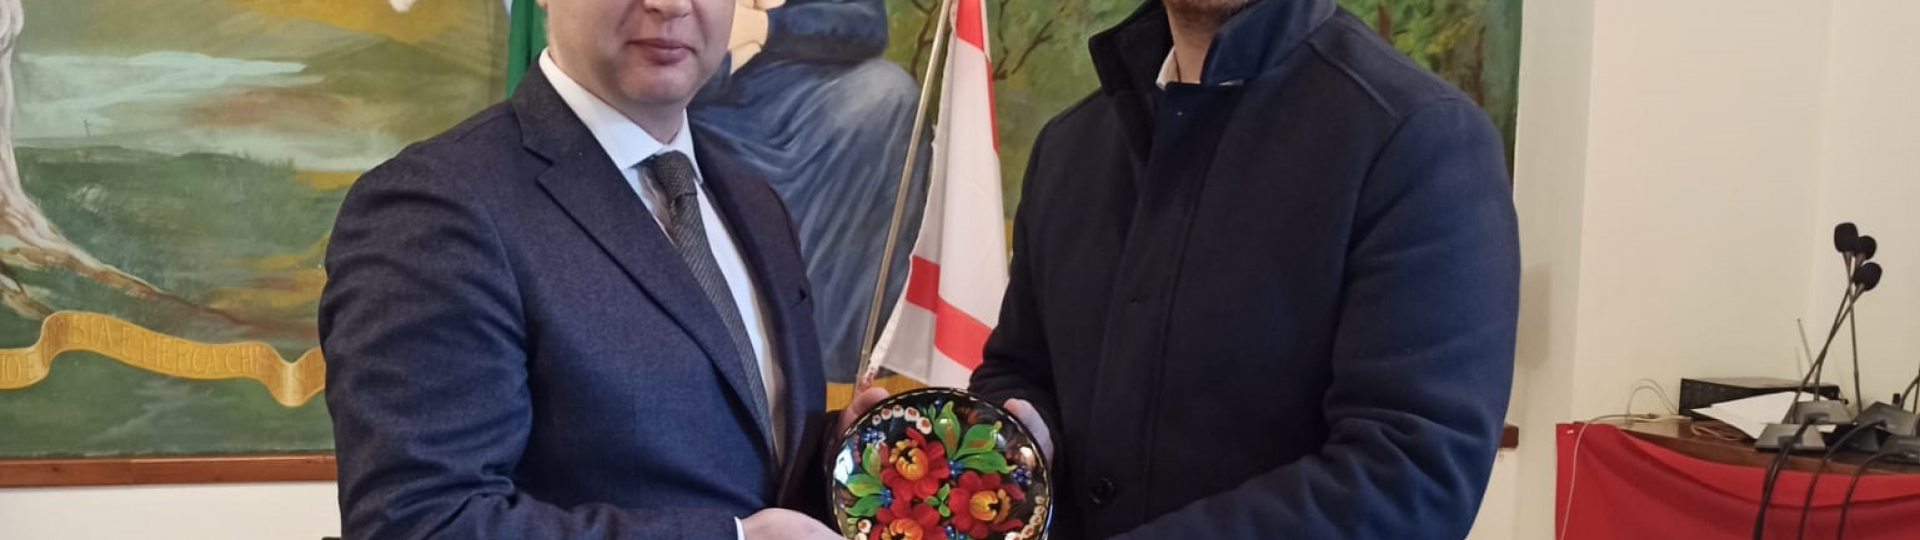 Foto Ambasciatore e Presidente Unione Roberto Ciappi